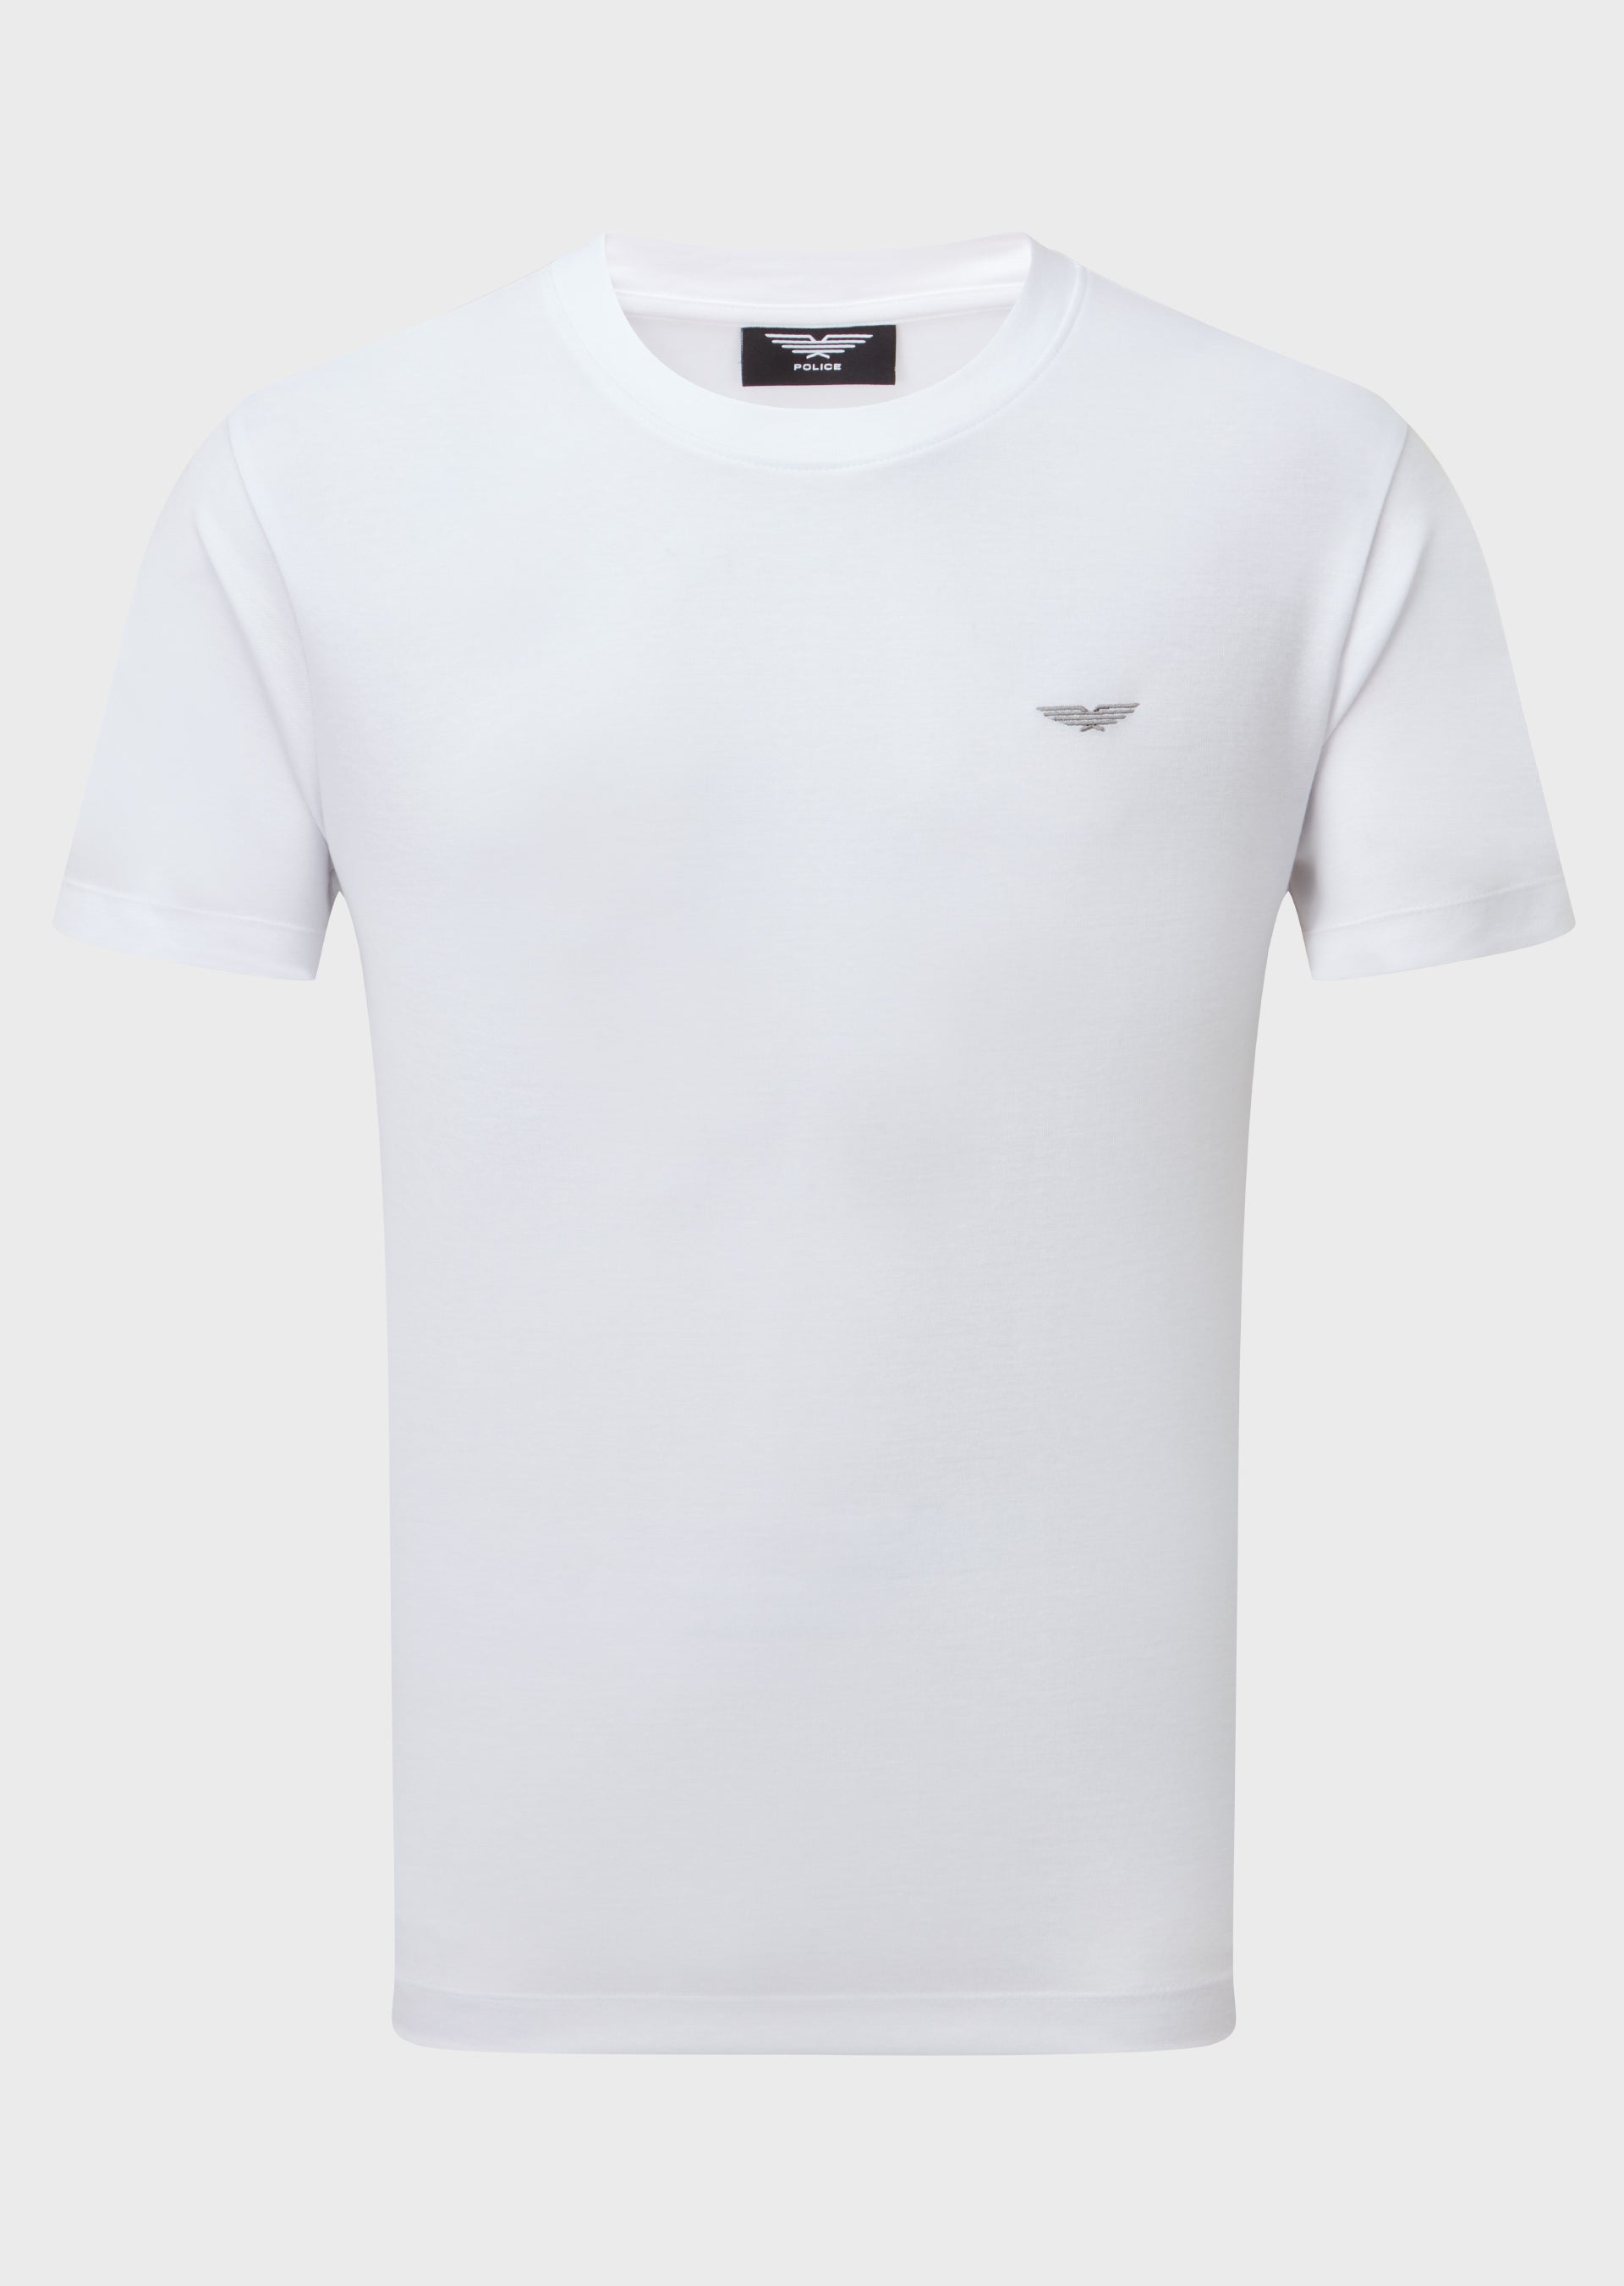 Sampton White T-Shirt – 883 Police